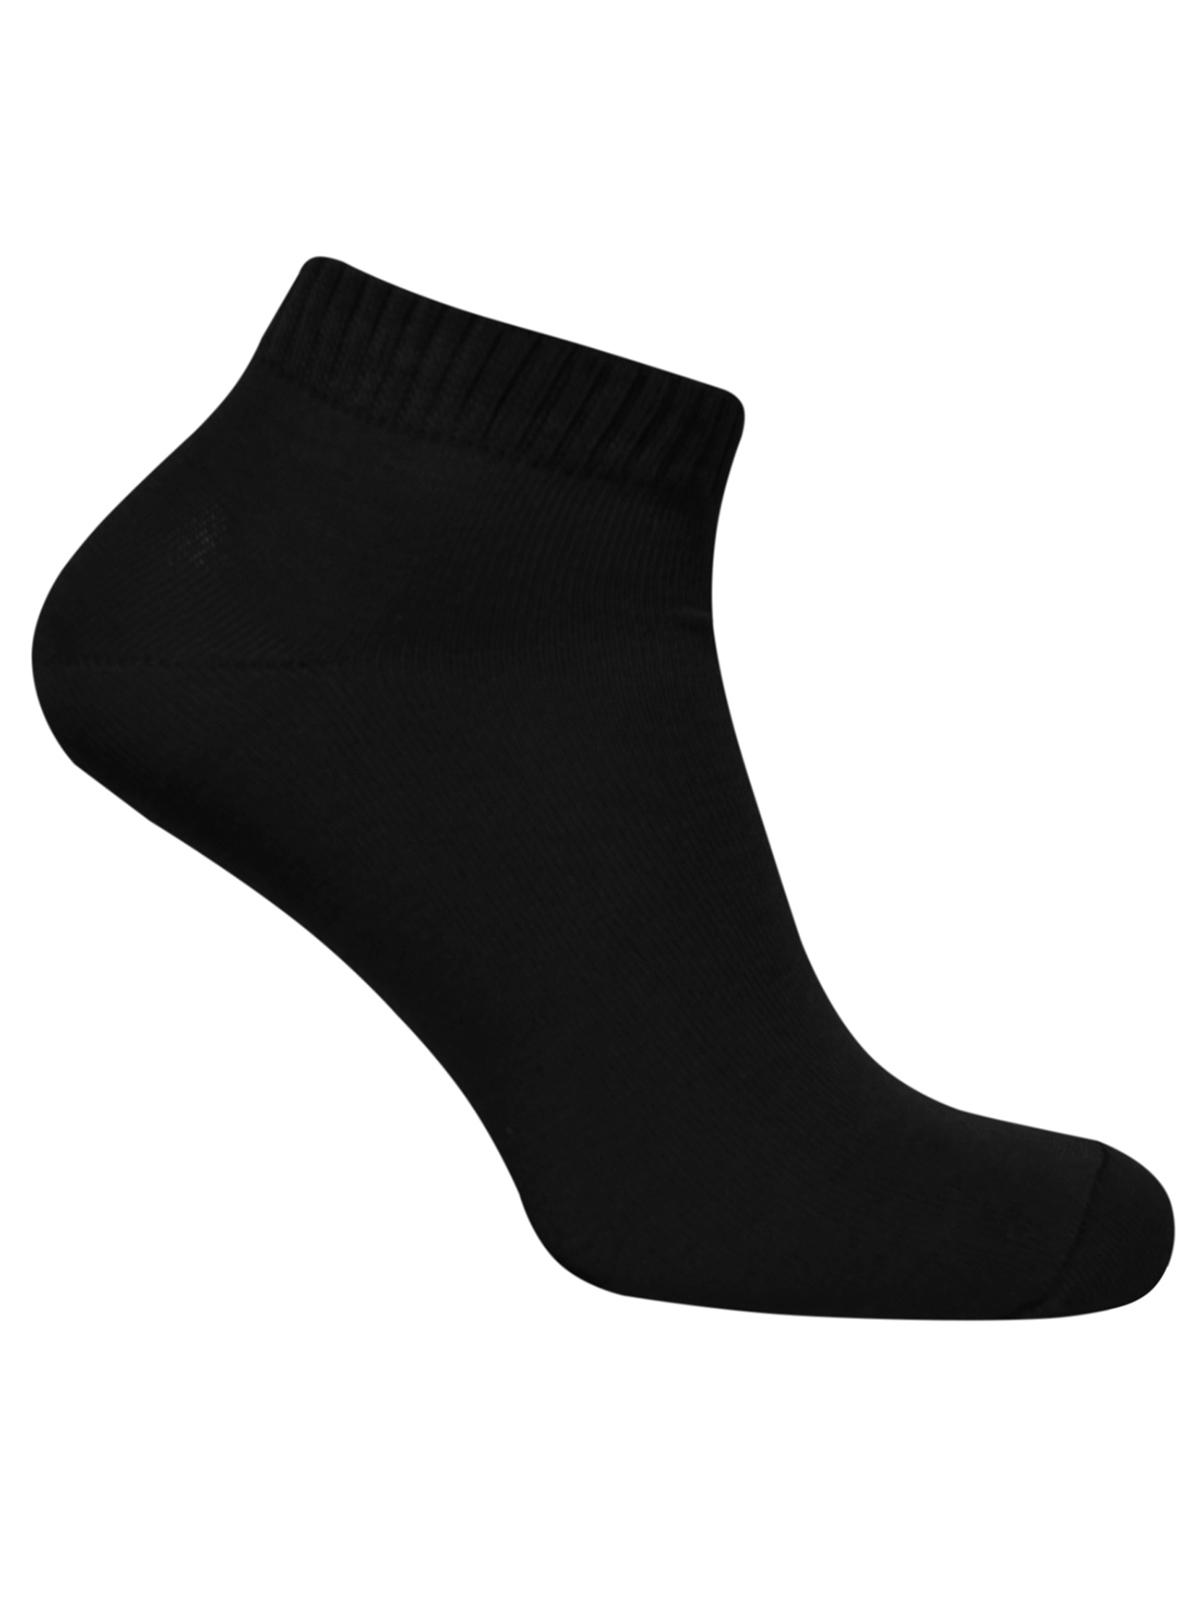 Короткие черные носки. Носки. Носки черные. Носки мужские классические. Носки черные короткие.